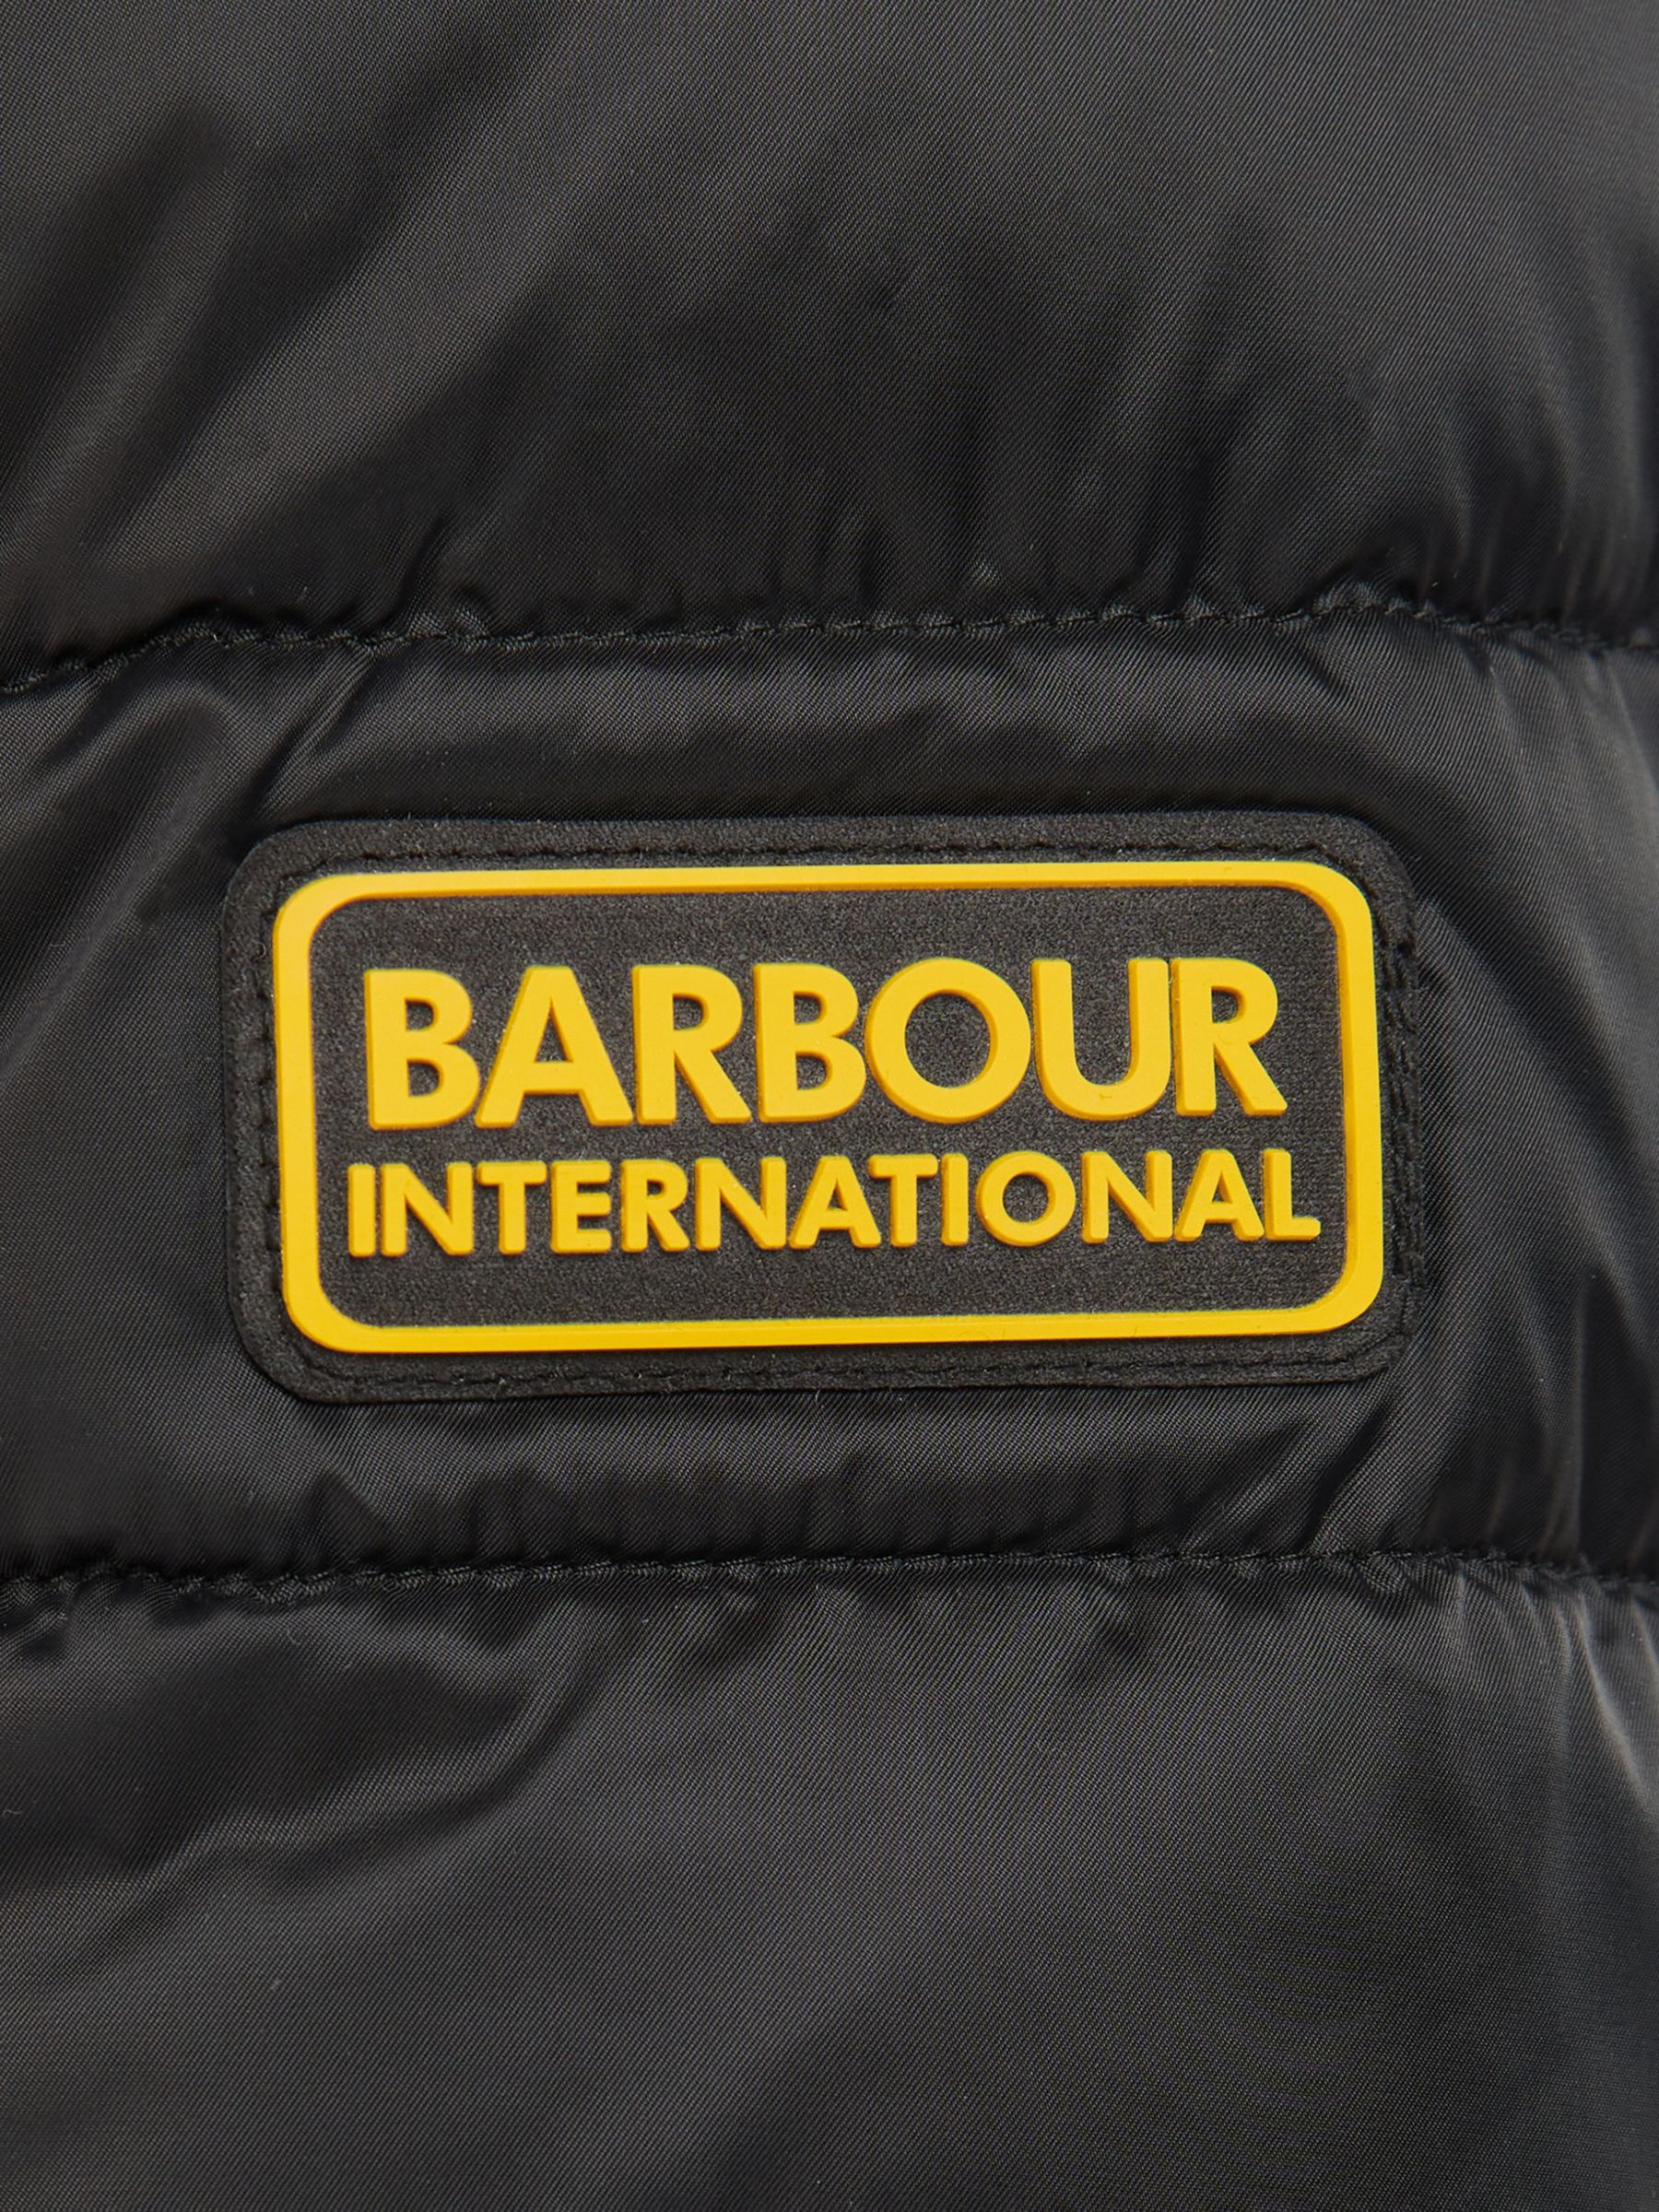 Barbour International Impeller Quilted Jacket, Black, S